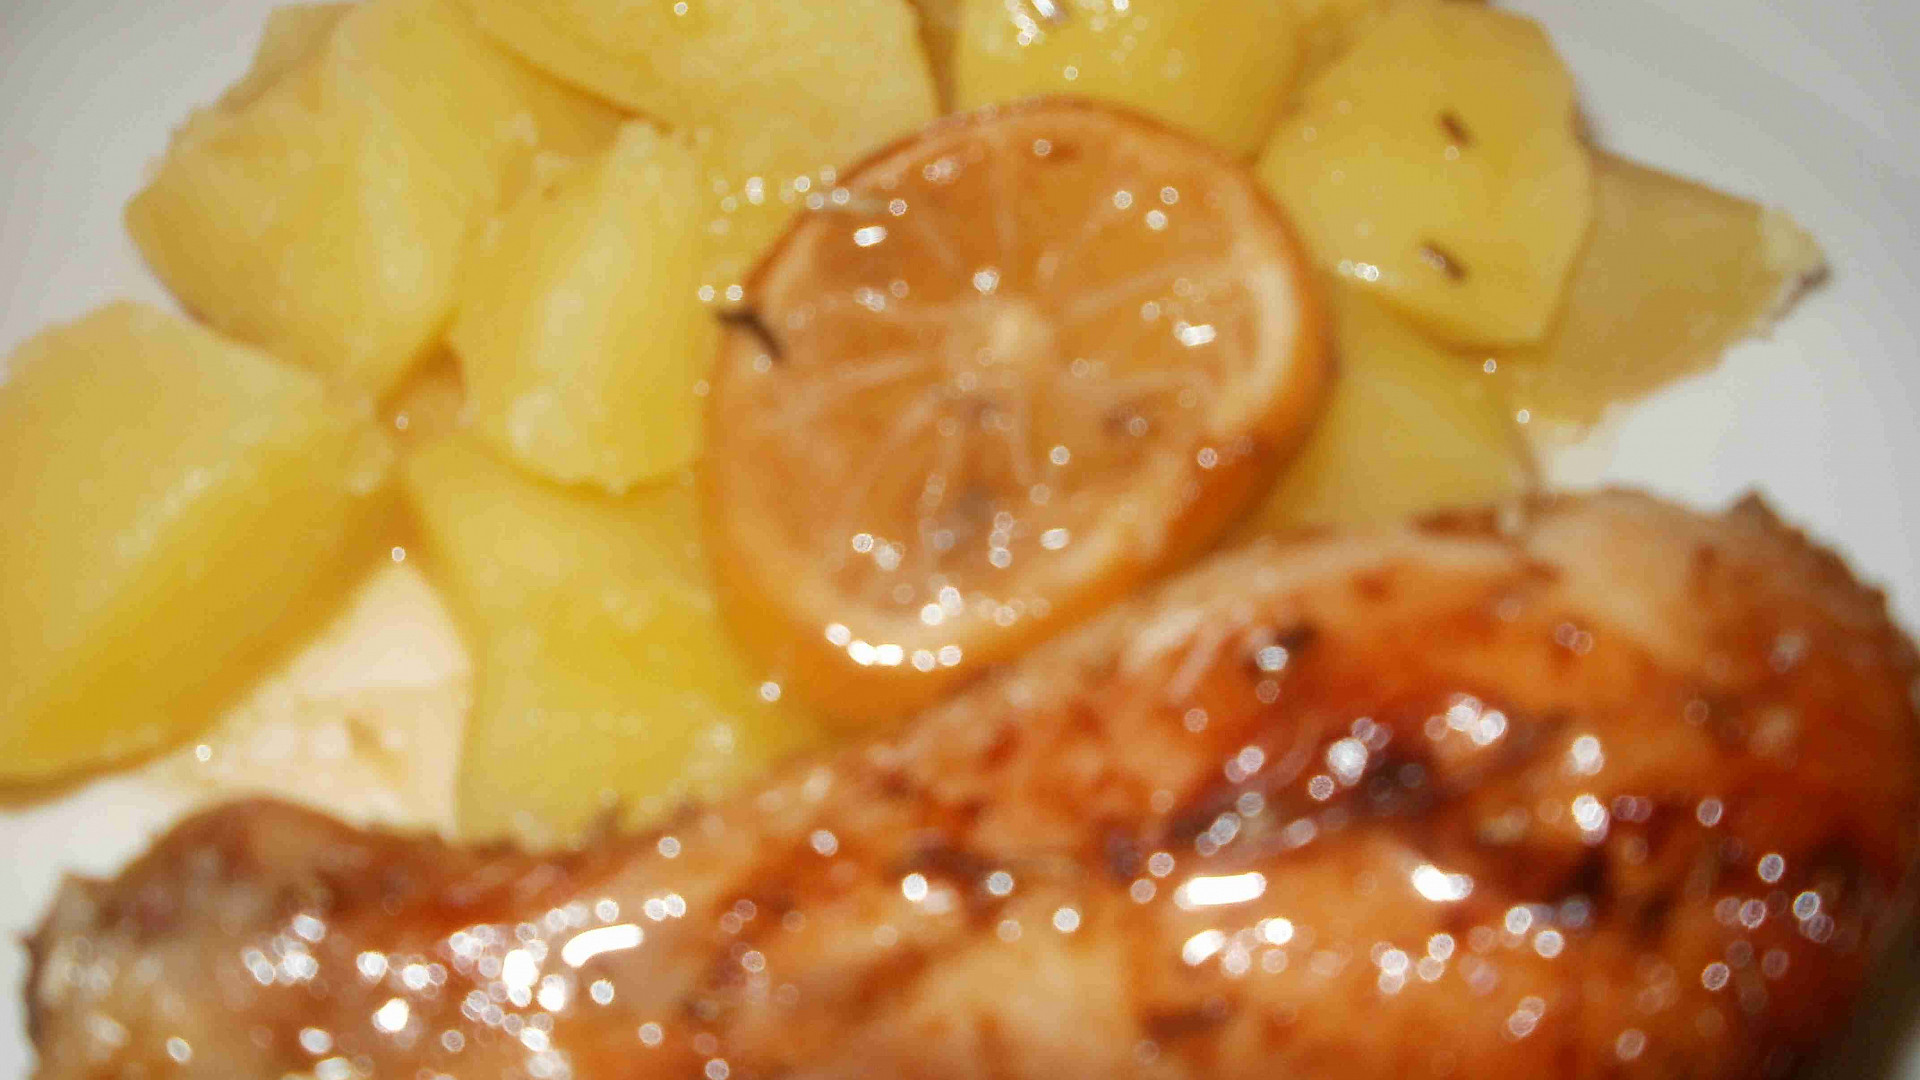 Medovo citronová stehýnka se zázvorem a rozmarýnem